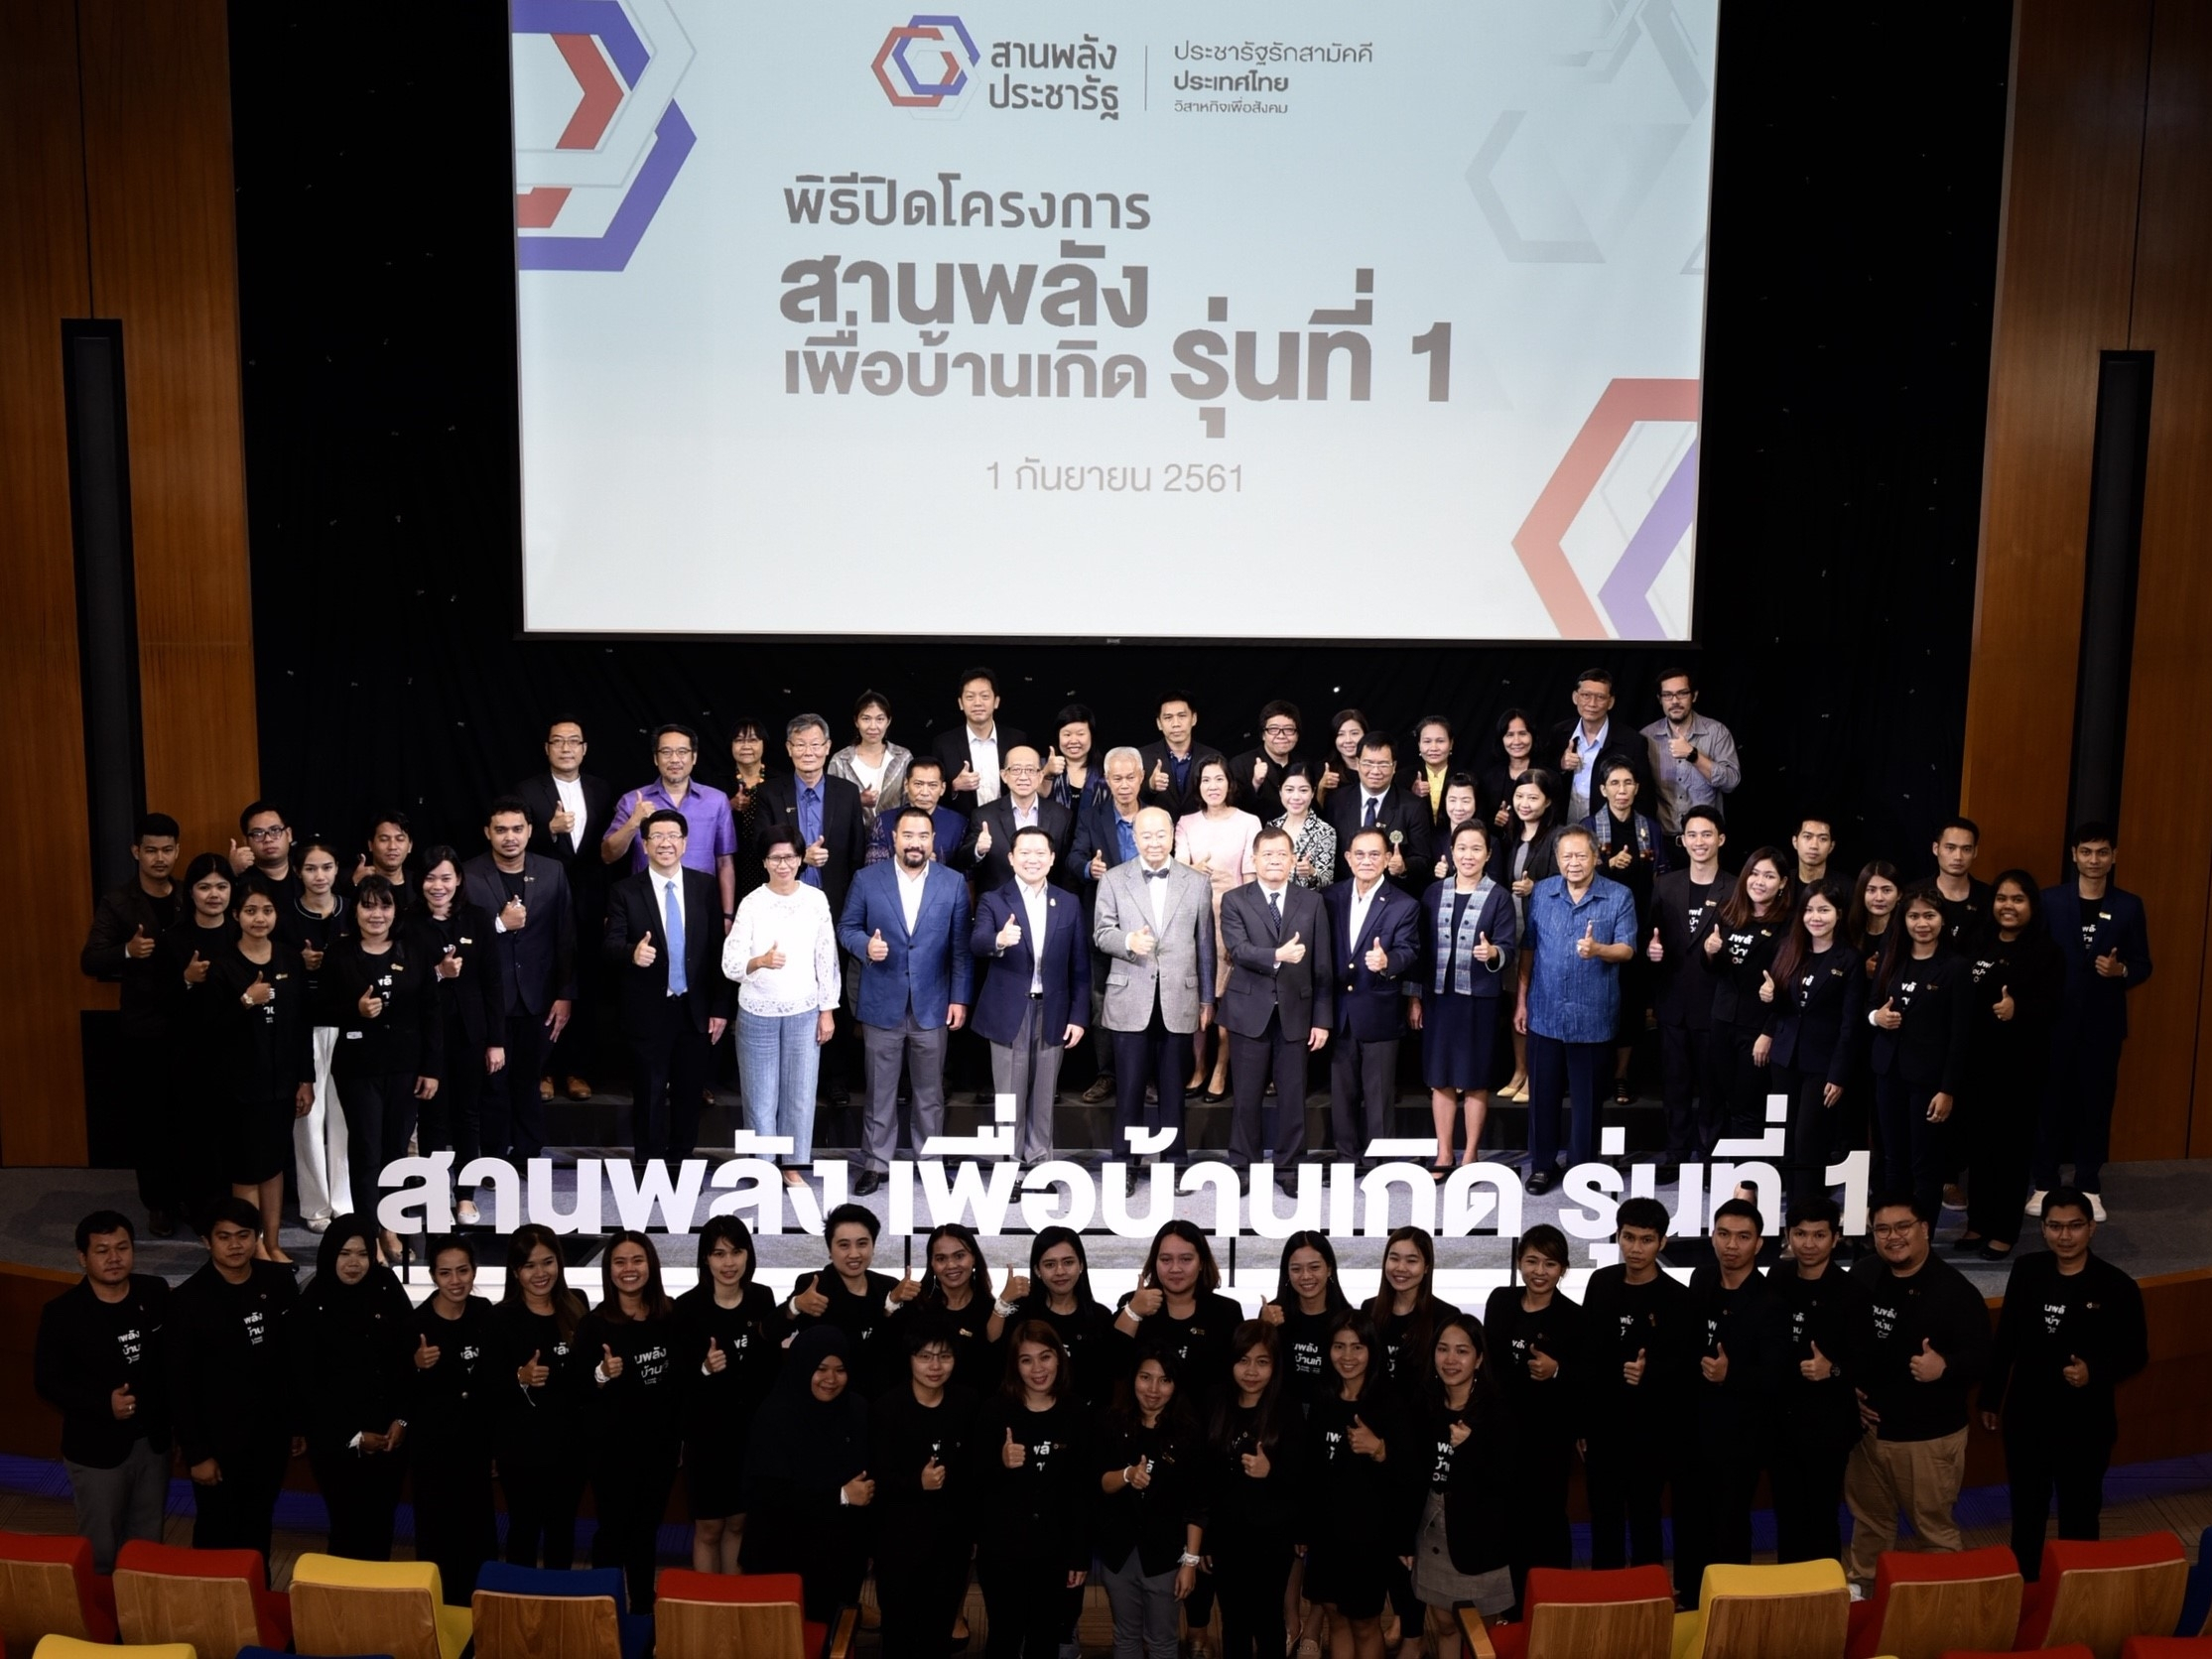 ประชารัฐรักสามัคคี ประเทศไทย จัดพิธีปิดโครงการสานพลังเพื่อบ้านเกิด รุ่นที่ 1